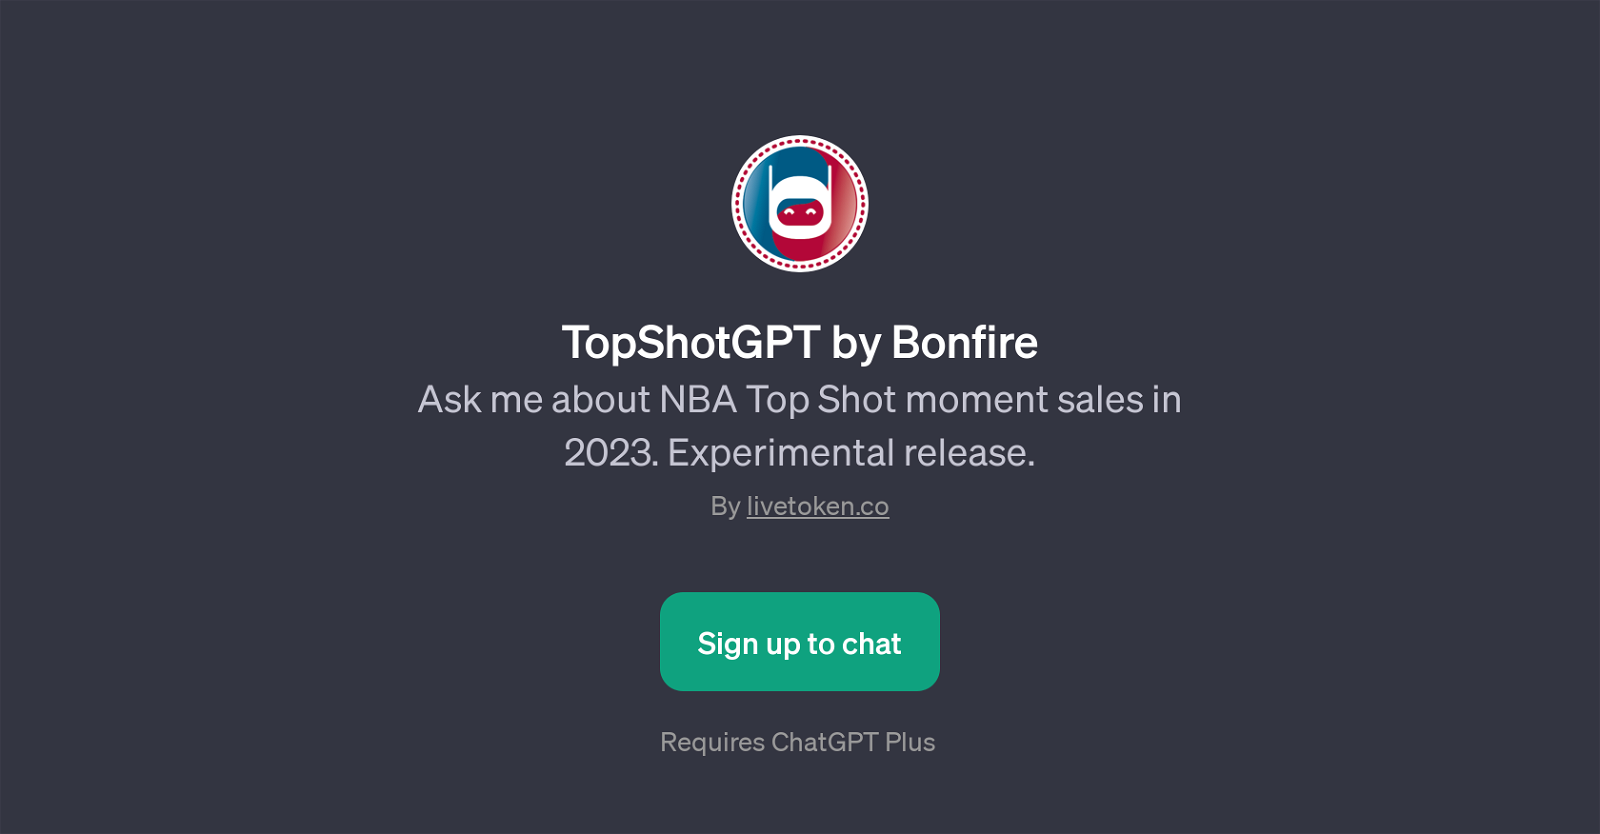 TopShotGPT by Bonfire website